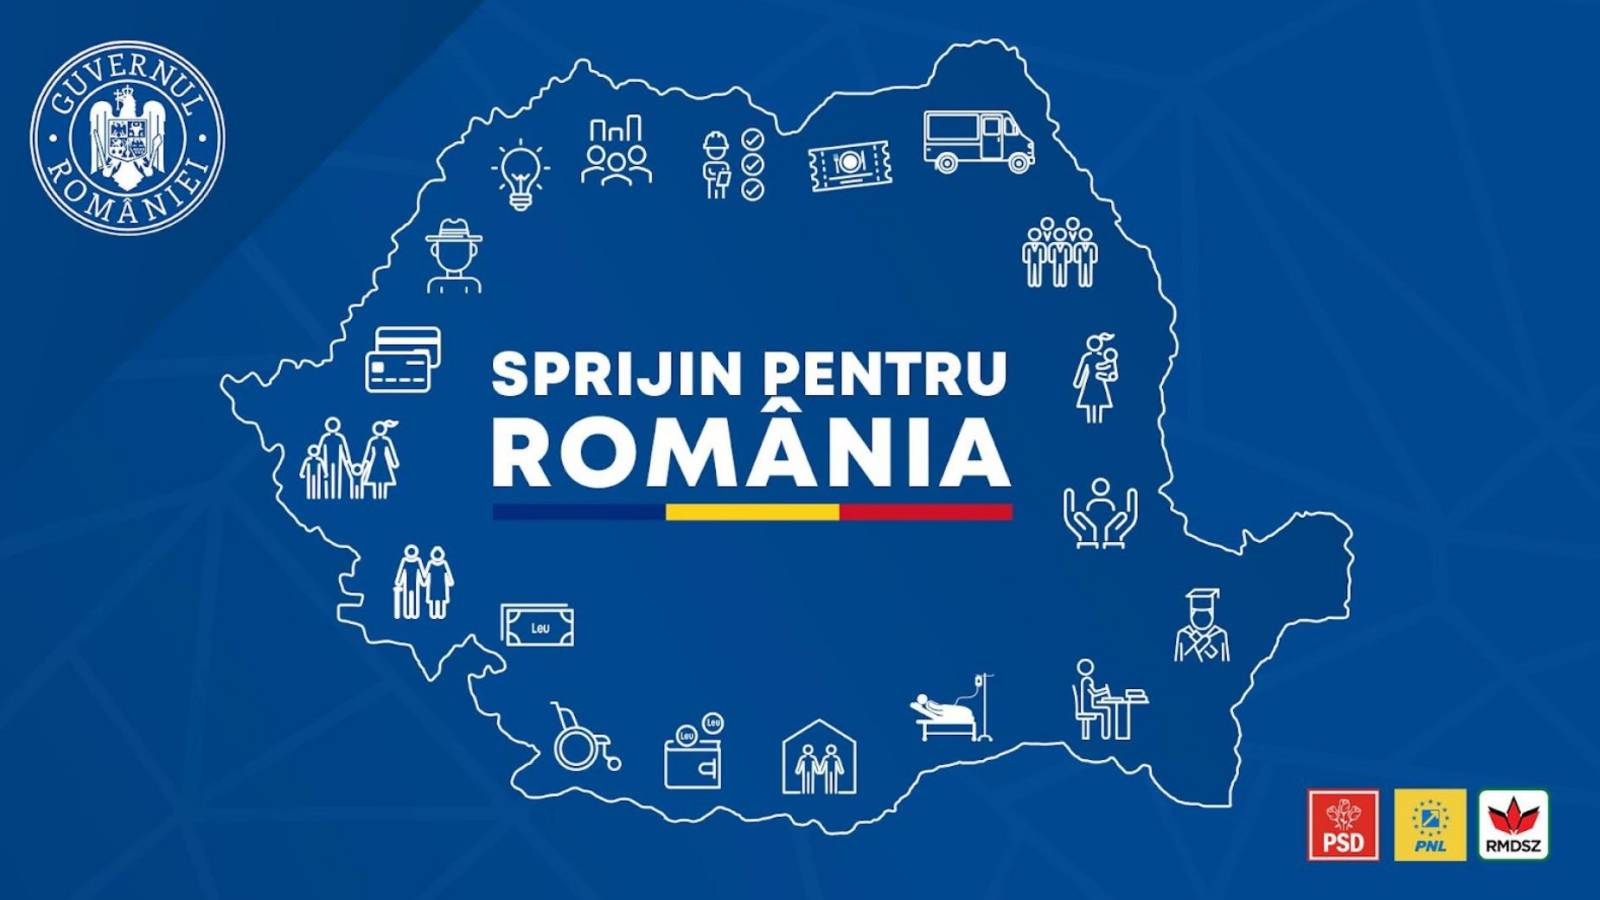 Regeringens pakke med økonomiske og sociale foranstaltninger for Rumænien